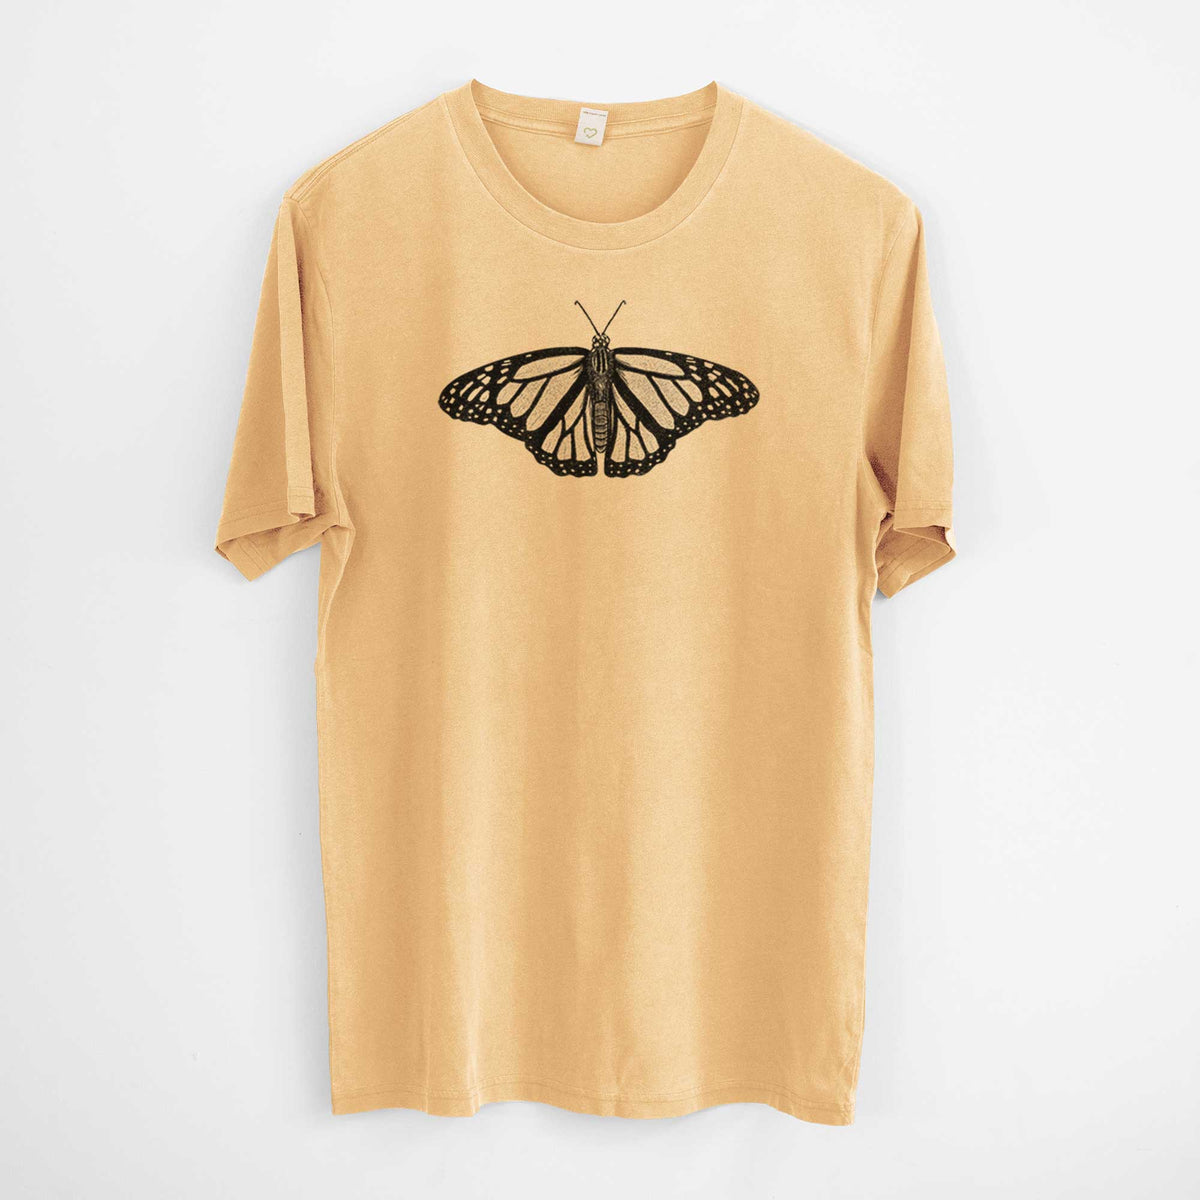 Danaus plexippus - Monarch Butterfly -  Mineral Wash 100% Organic Cotton Short Sleeve